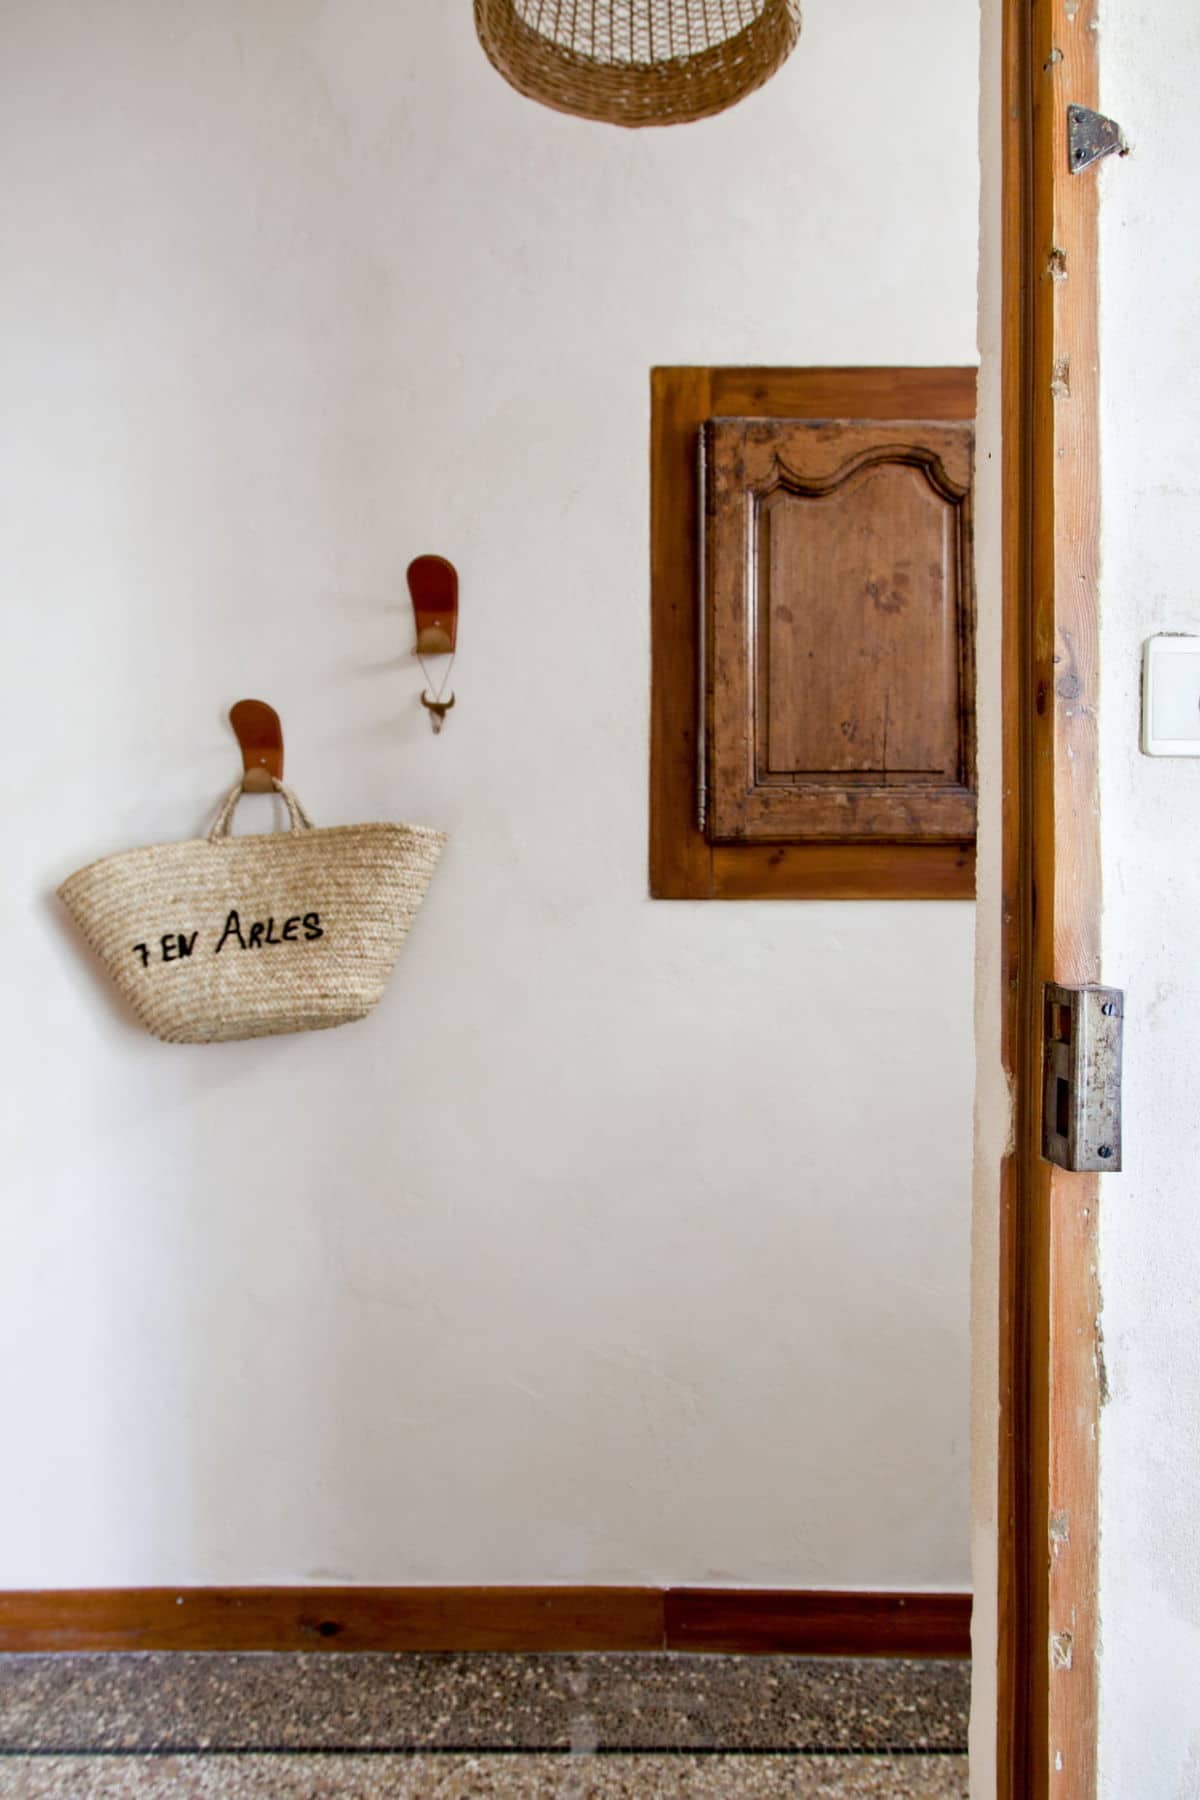 Maison de charme à louer à Arles • House for rent in Arles, Camargue, France • Les Bons Détails